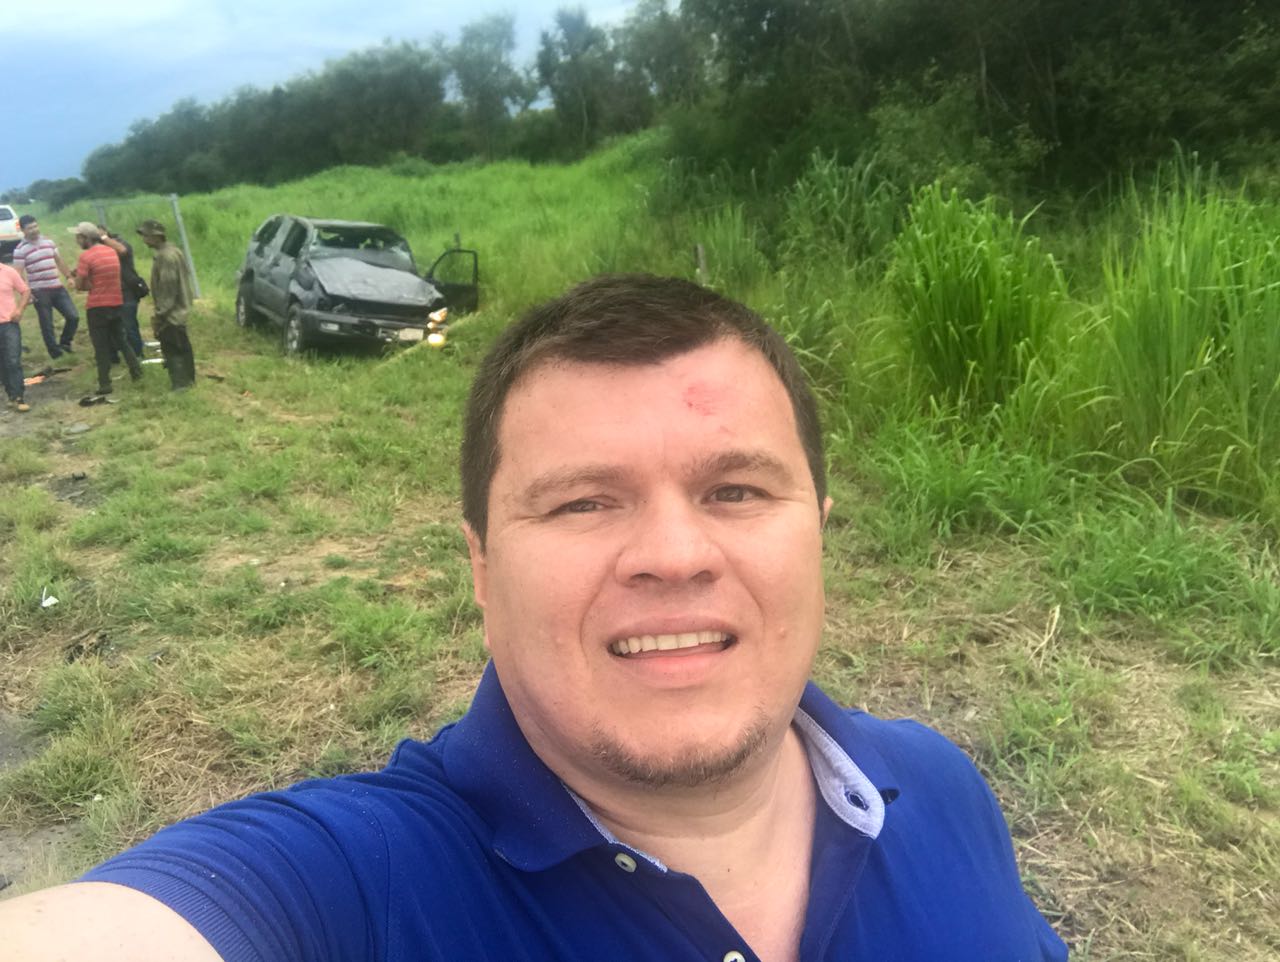 Diputado se sacó una selfie tras sufrir accidente